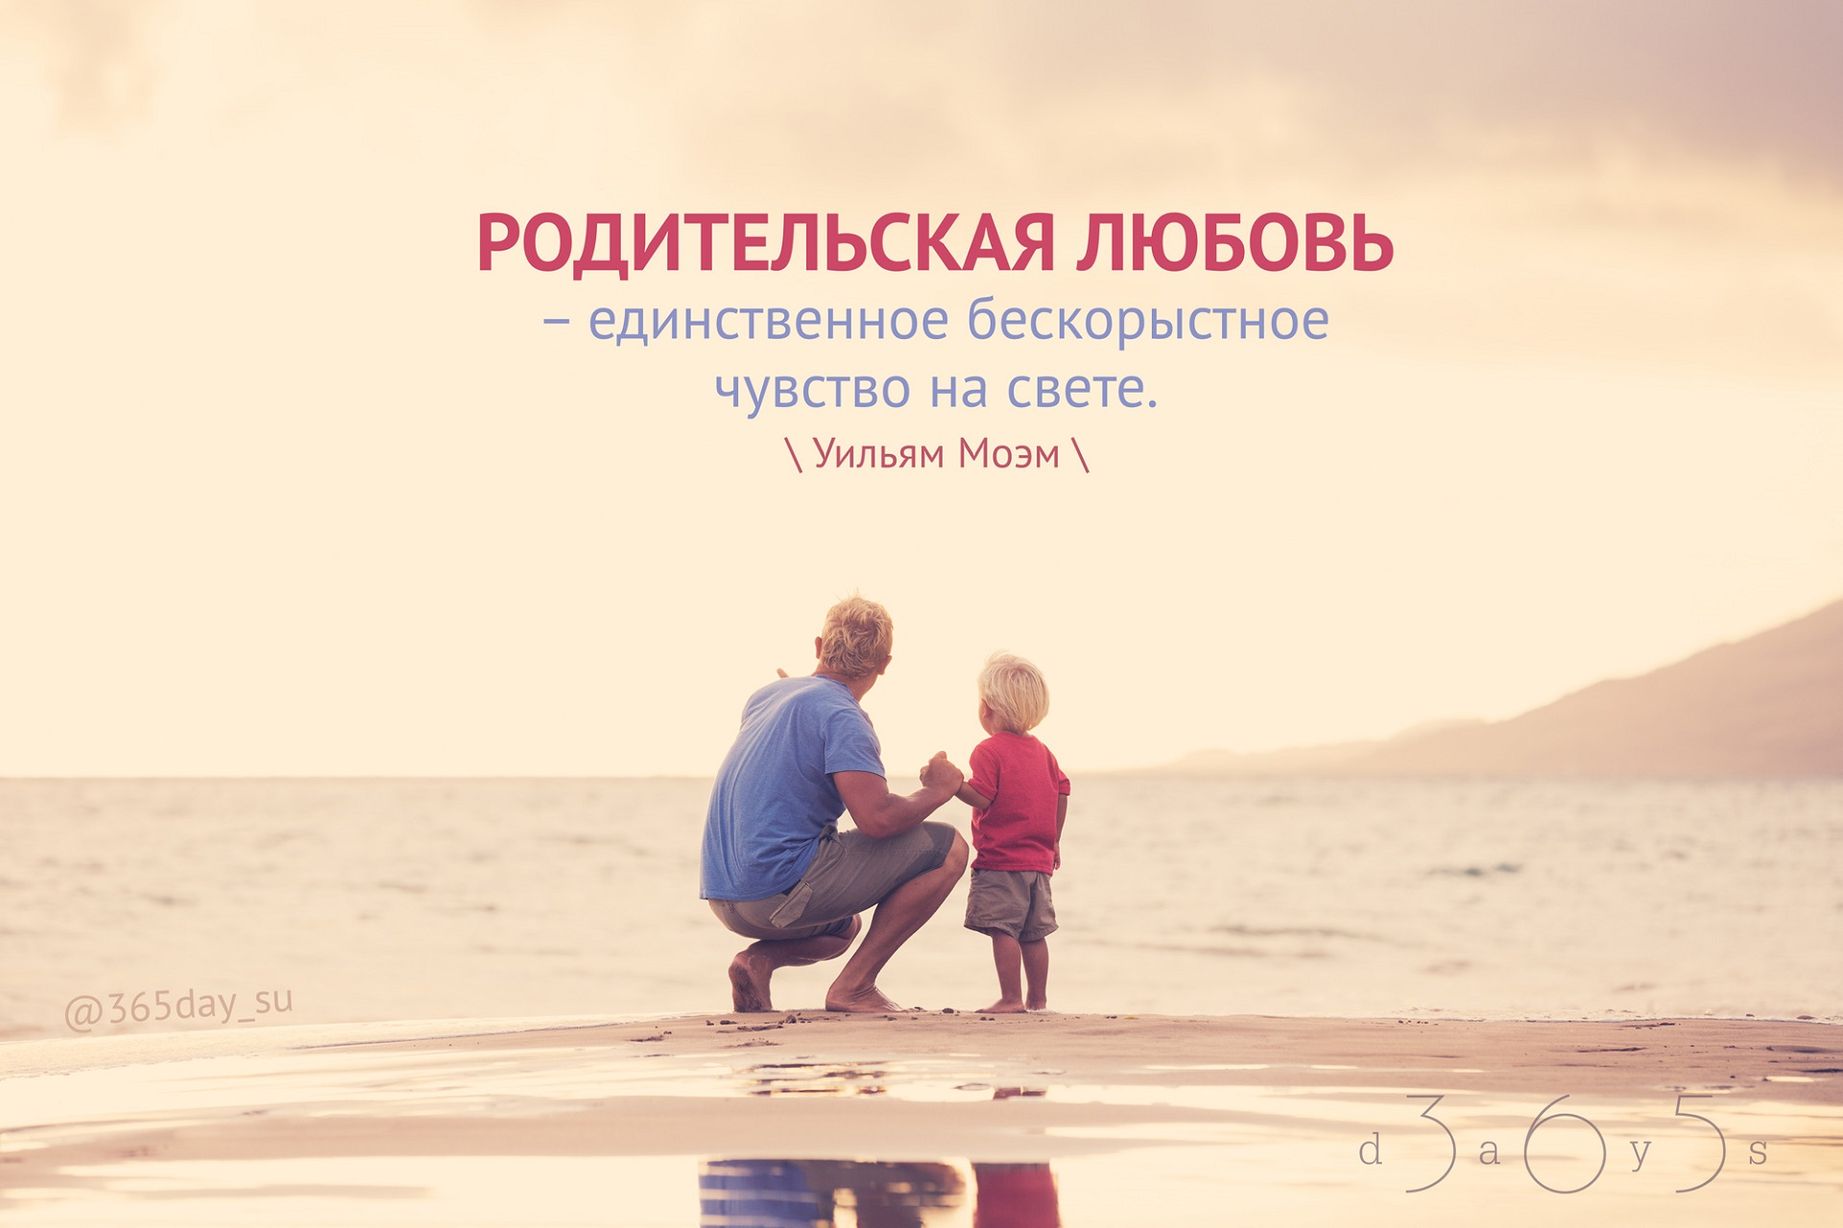 5dd09a3db4637 - Цитаты про любовь к родителям